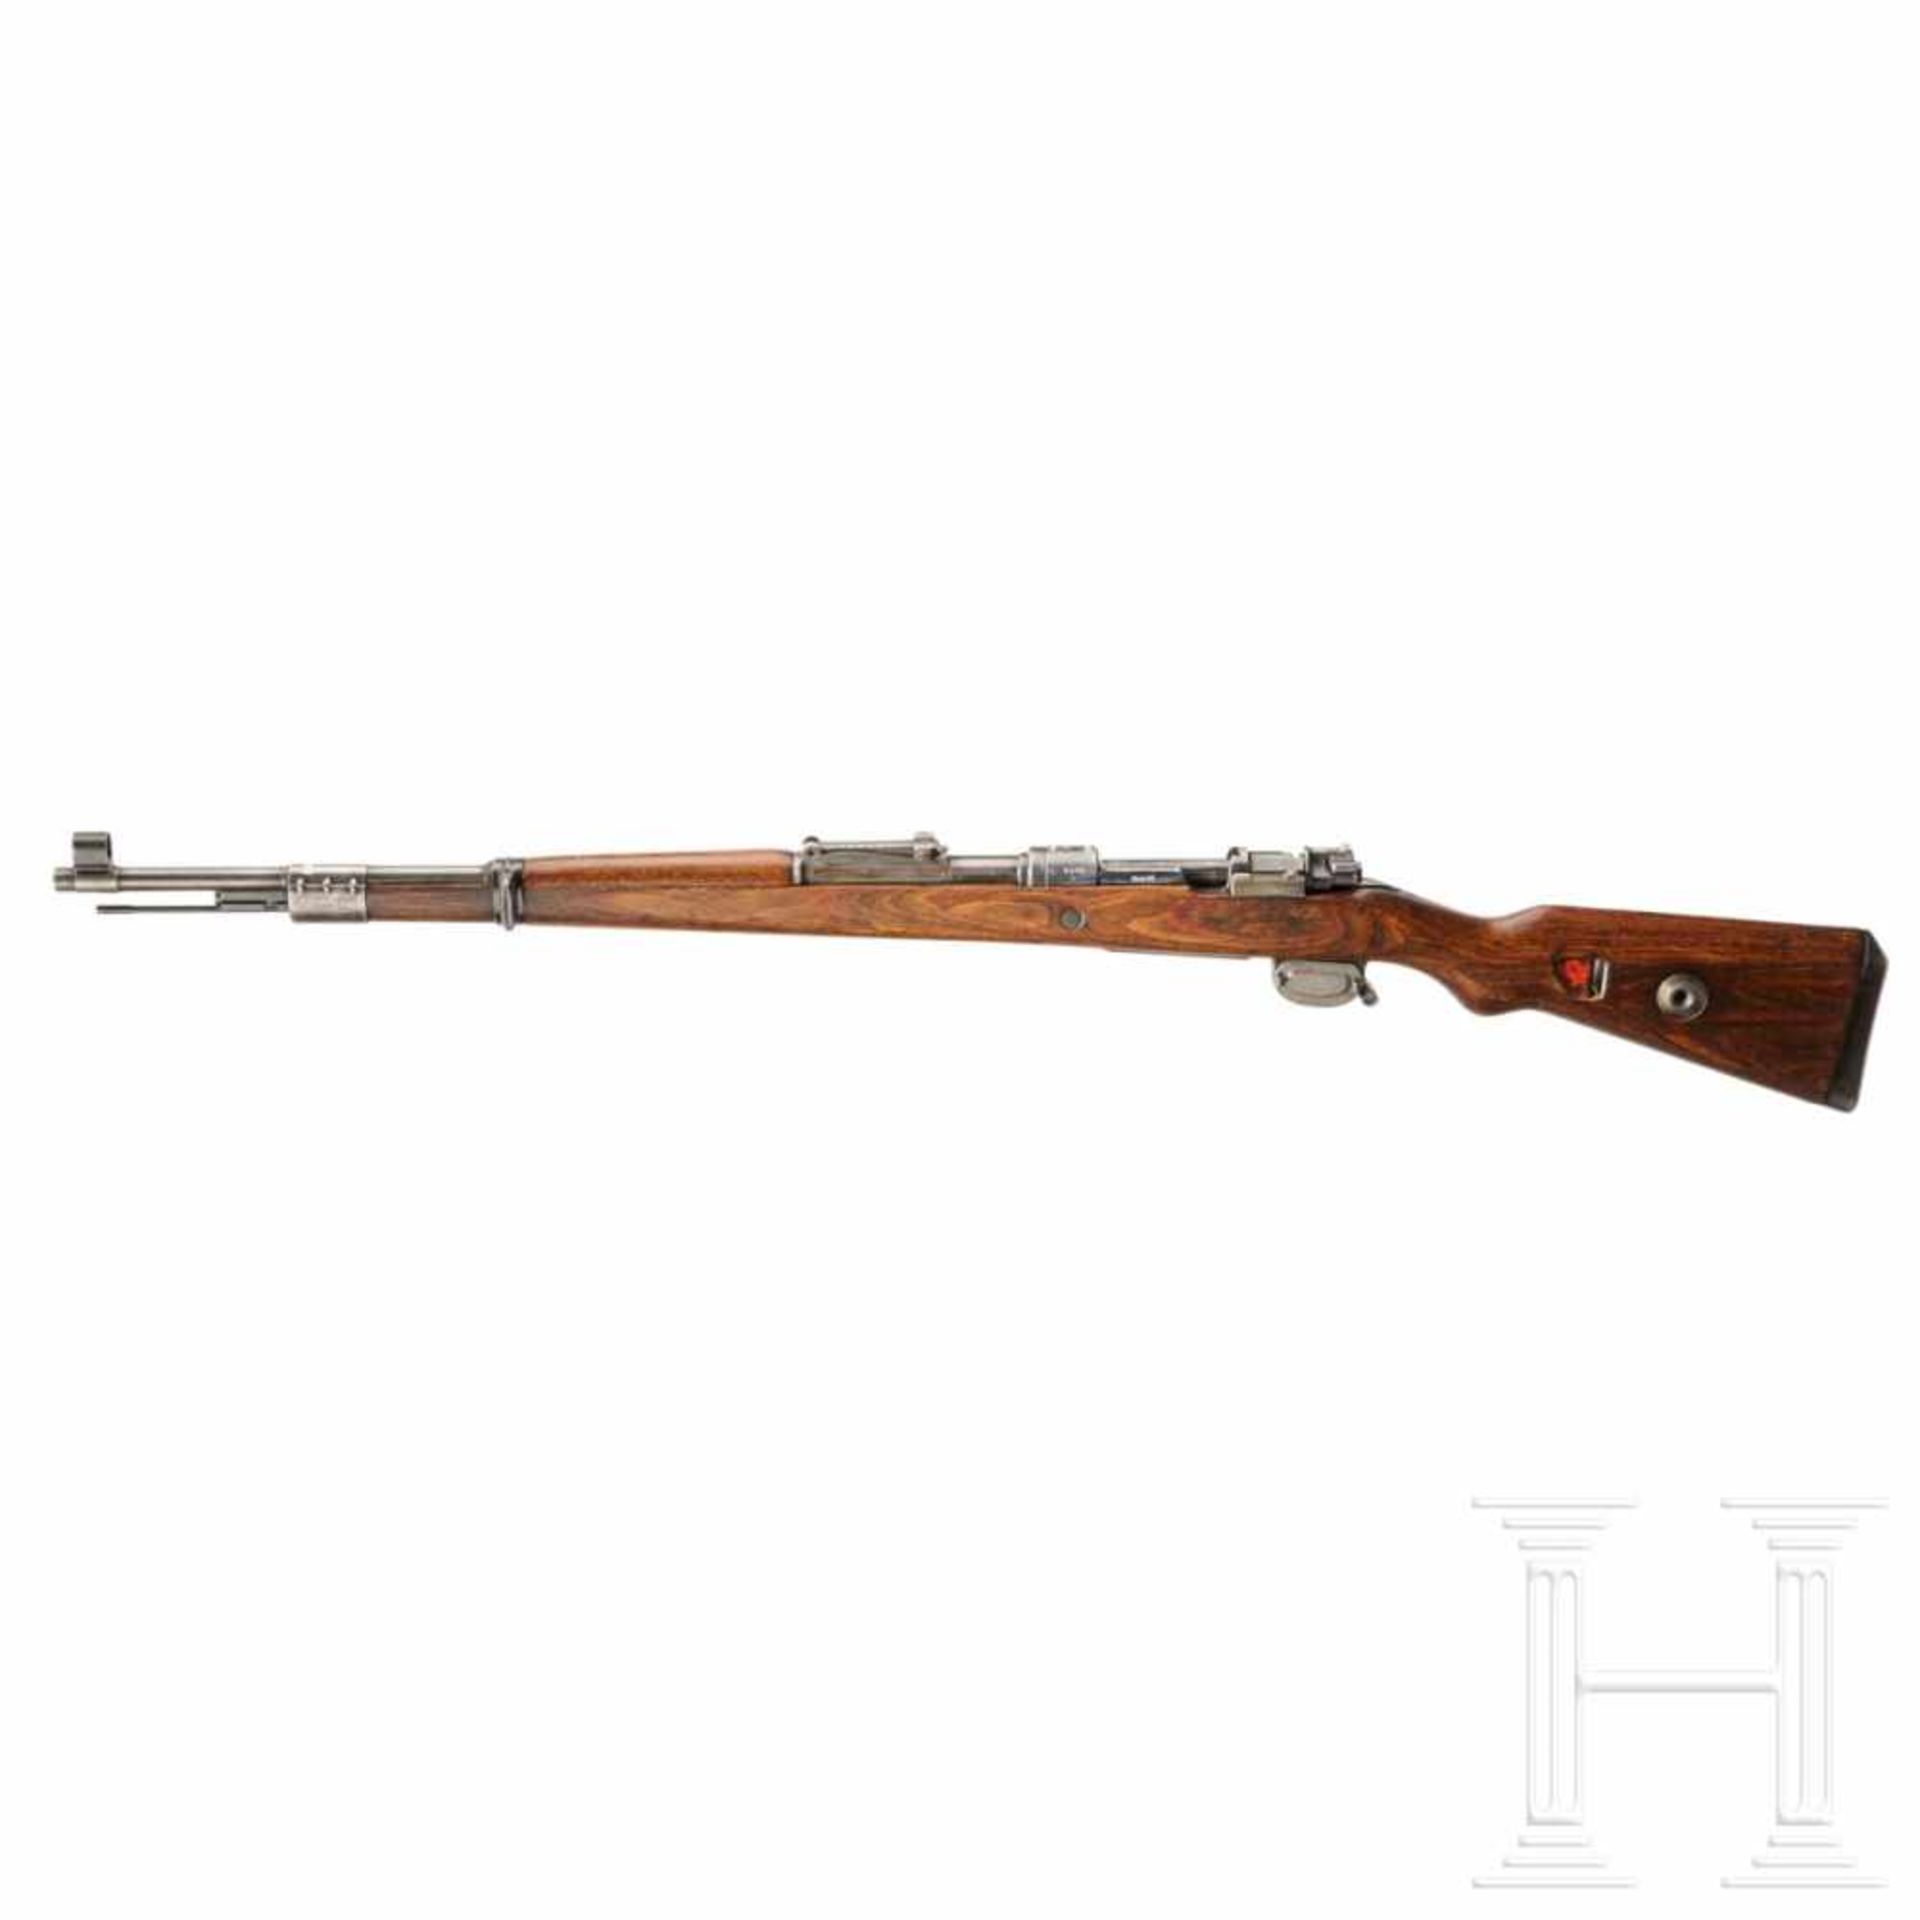 A carbine 98 k, code "dot - 1943"Kal. 8x57 IS, Nr. 5958m, nummerngleich. Fast blanker Lauf. - Bild 2 aus 3